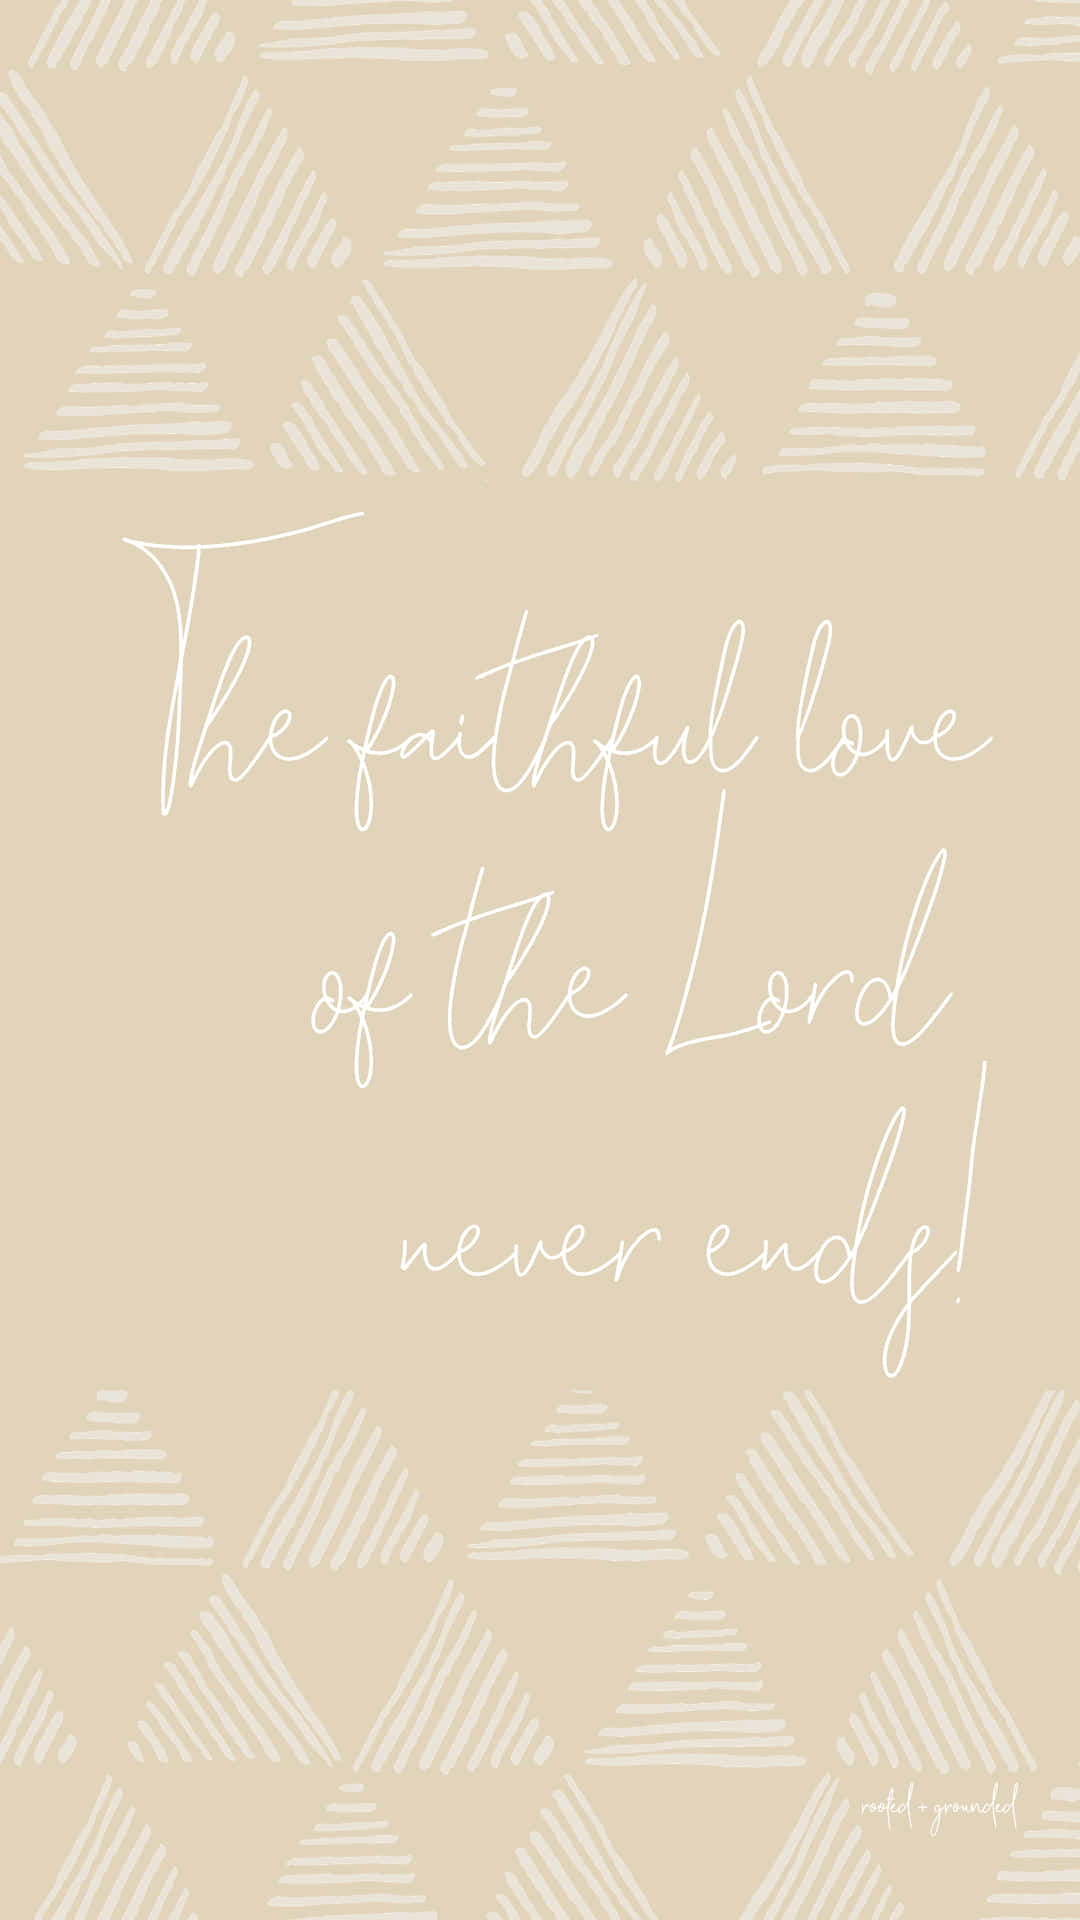 Guds trofaste kærlighed slutter aldrig Wallpaper